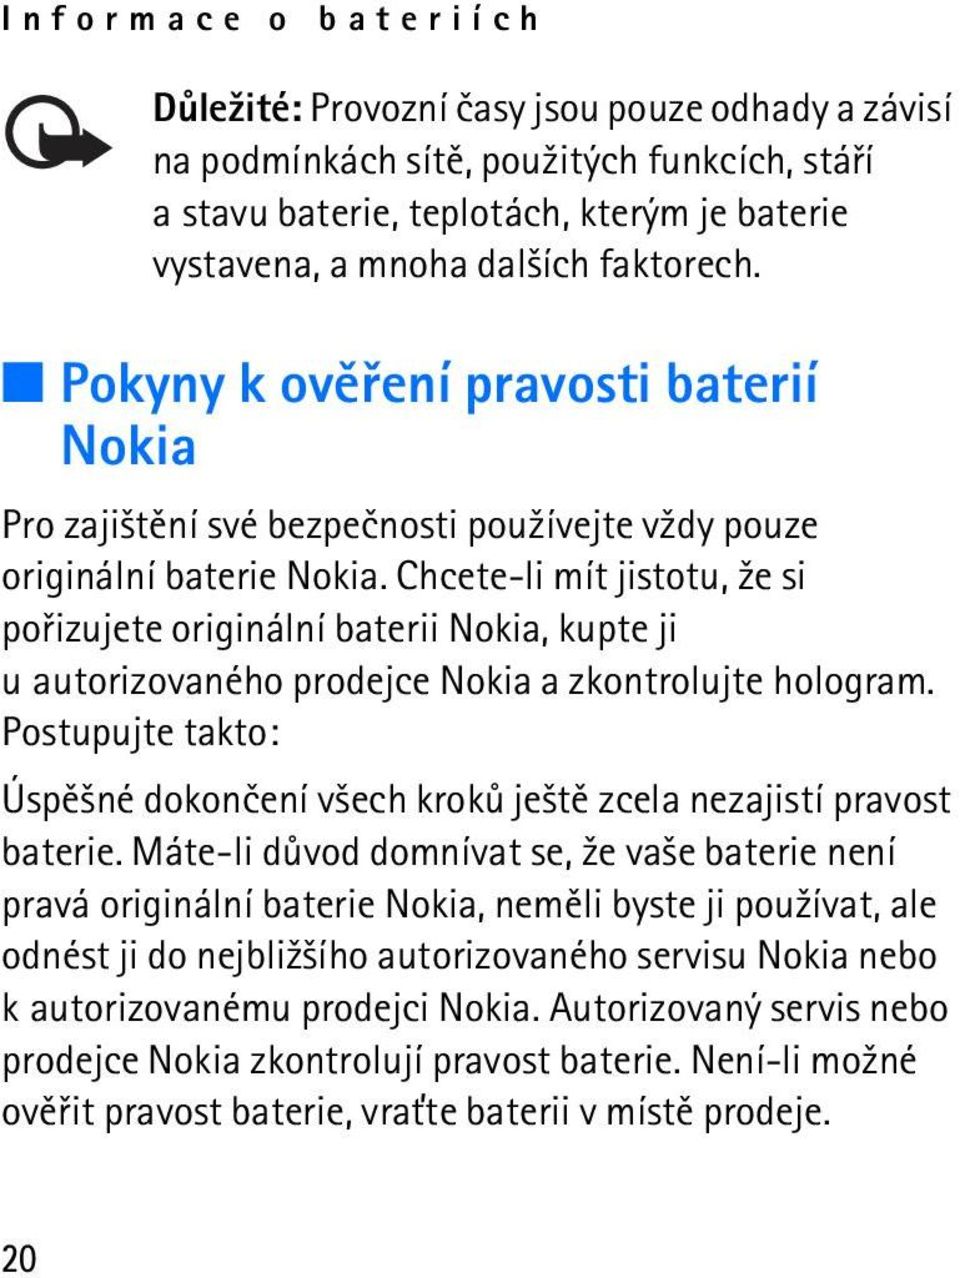 Chcete-li mít jistotu, ¾e si poøizujete originální baterii Nokia, kupte ji u autorizovaného prodejce Nokia a zkontrolujte hologram.